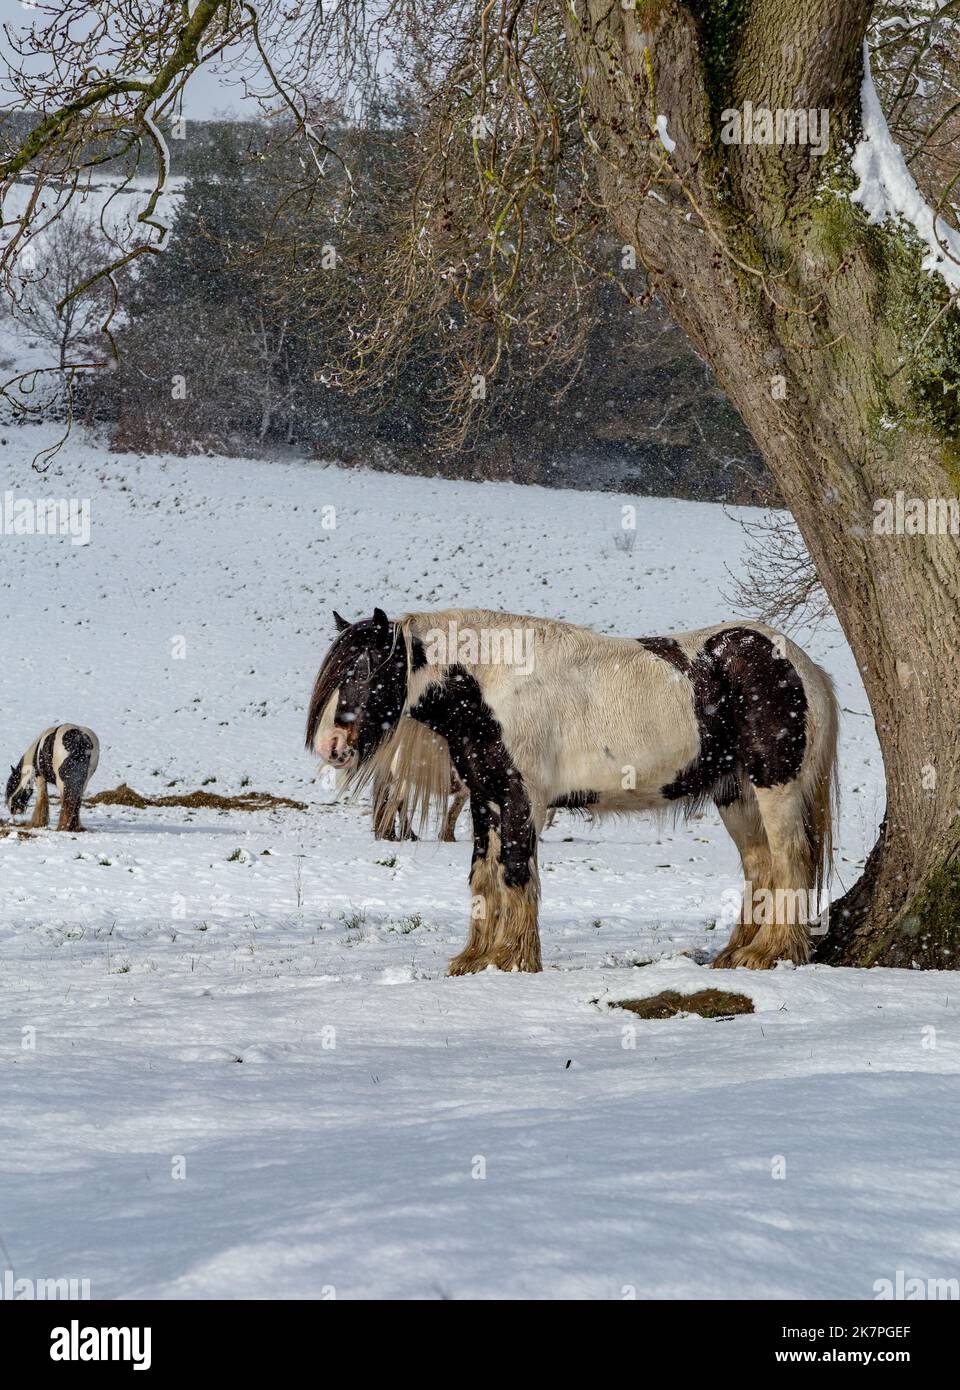 Un cheval se trouve sous un arbre lors d'une douche à neige dans le Yorkshire, en Angleterre. Un autre cheval à l'arrière-plan se nourrit de foin qui a été laissé sur la neige. Banque D'Images